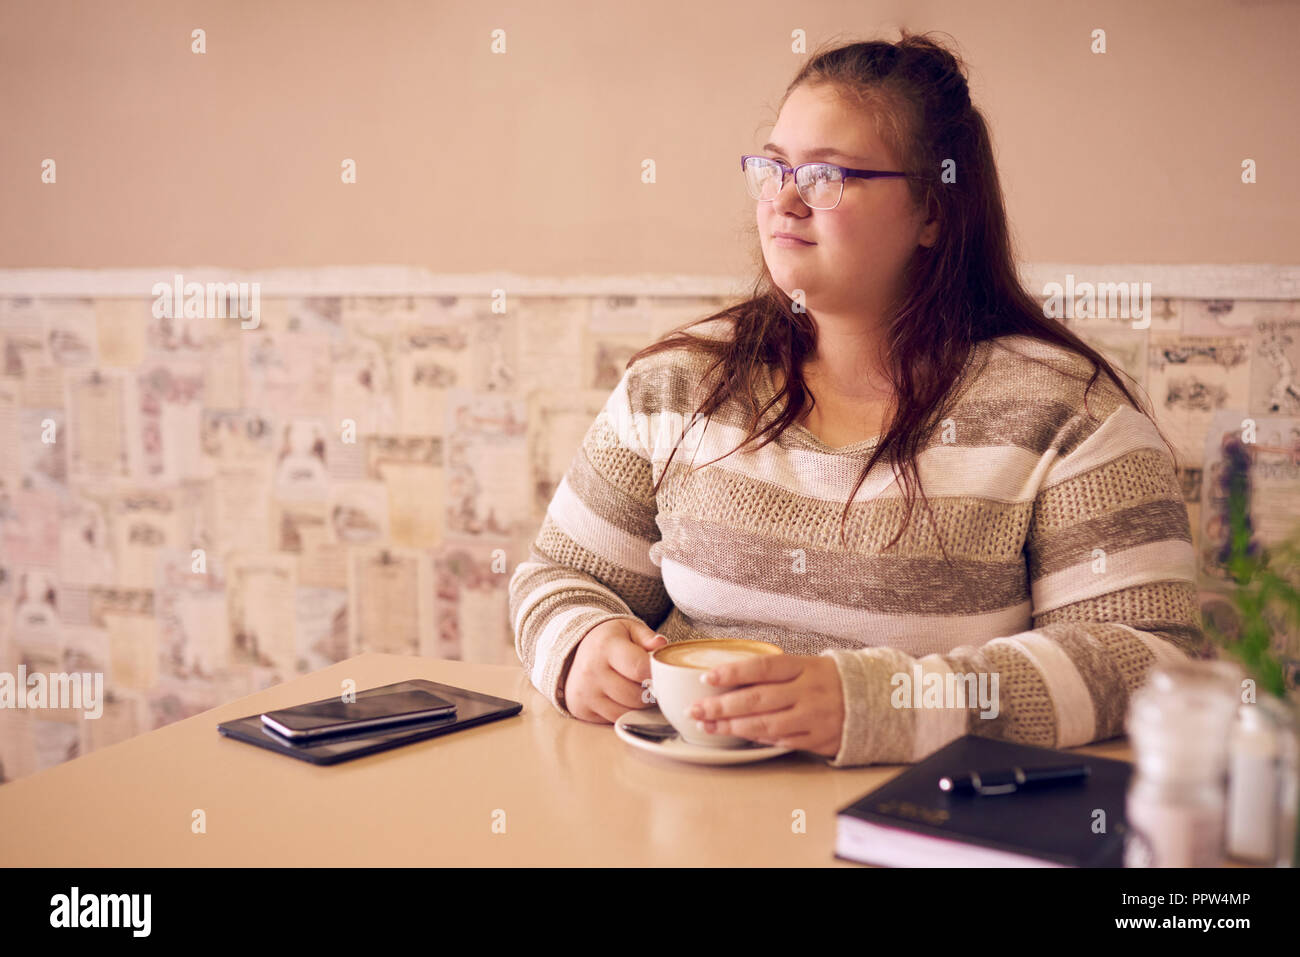 Übergrößen Frau sitzt in einem hellen Café, während Sie bei einer Tasse Kaffee ihre Hände warm halten und bereit mit Ihrem Tablet-PC auf dem Tisch weiter arbeiten können. Stockfoto